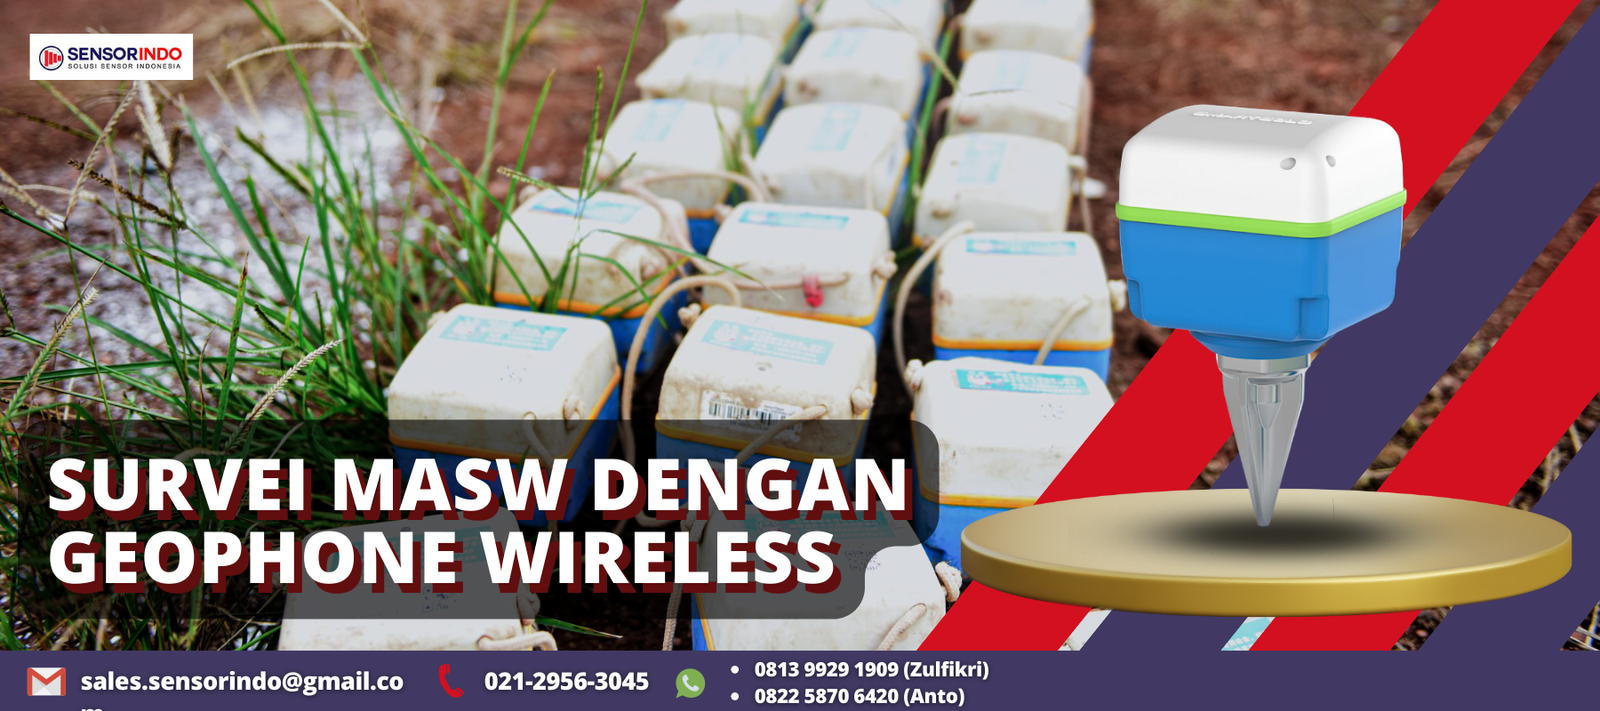 Survei MASW Dengan Geophone Wireless